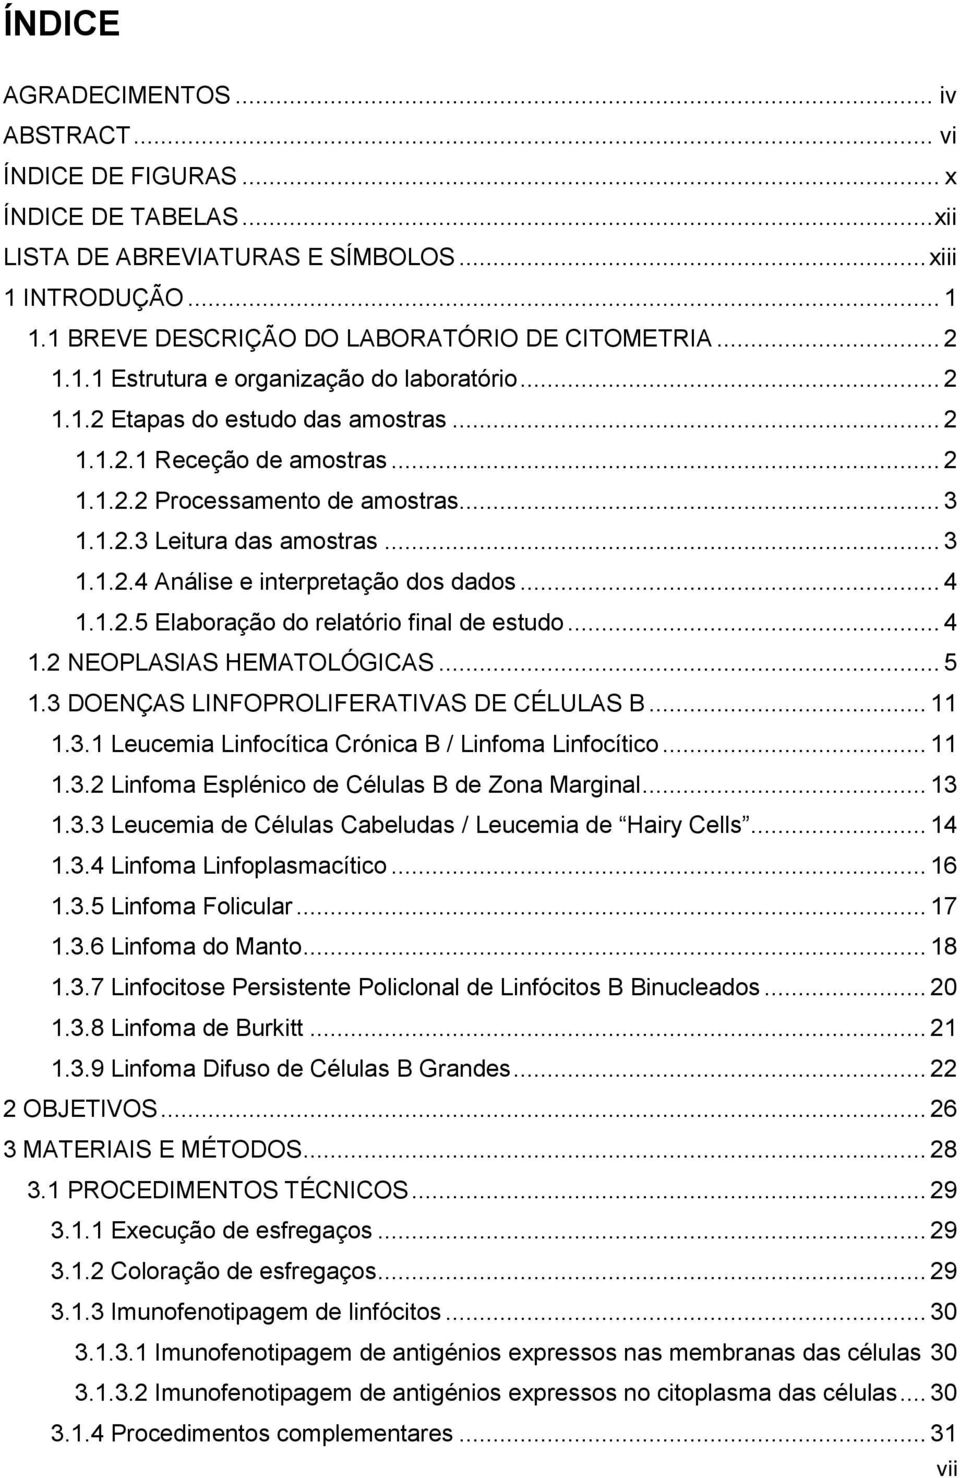 .. 3 1.1.2.4 Análise e interpretação dos dados... 4 1.1.2.5 Elaboração do relatório final de estudo... 4 1.2 NEOPLASIAS HEMATOLÓGICAS... 5 1.3 DOENÇAS LINFOPROLIFERATIVAS DE CÉLULAS B... 11 1.3.1 Leucemia Linfocítica Crónica B / Linfoma Linfocítico.